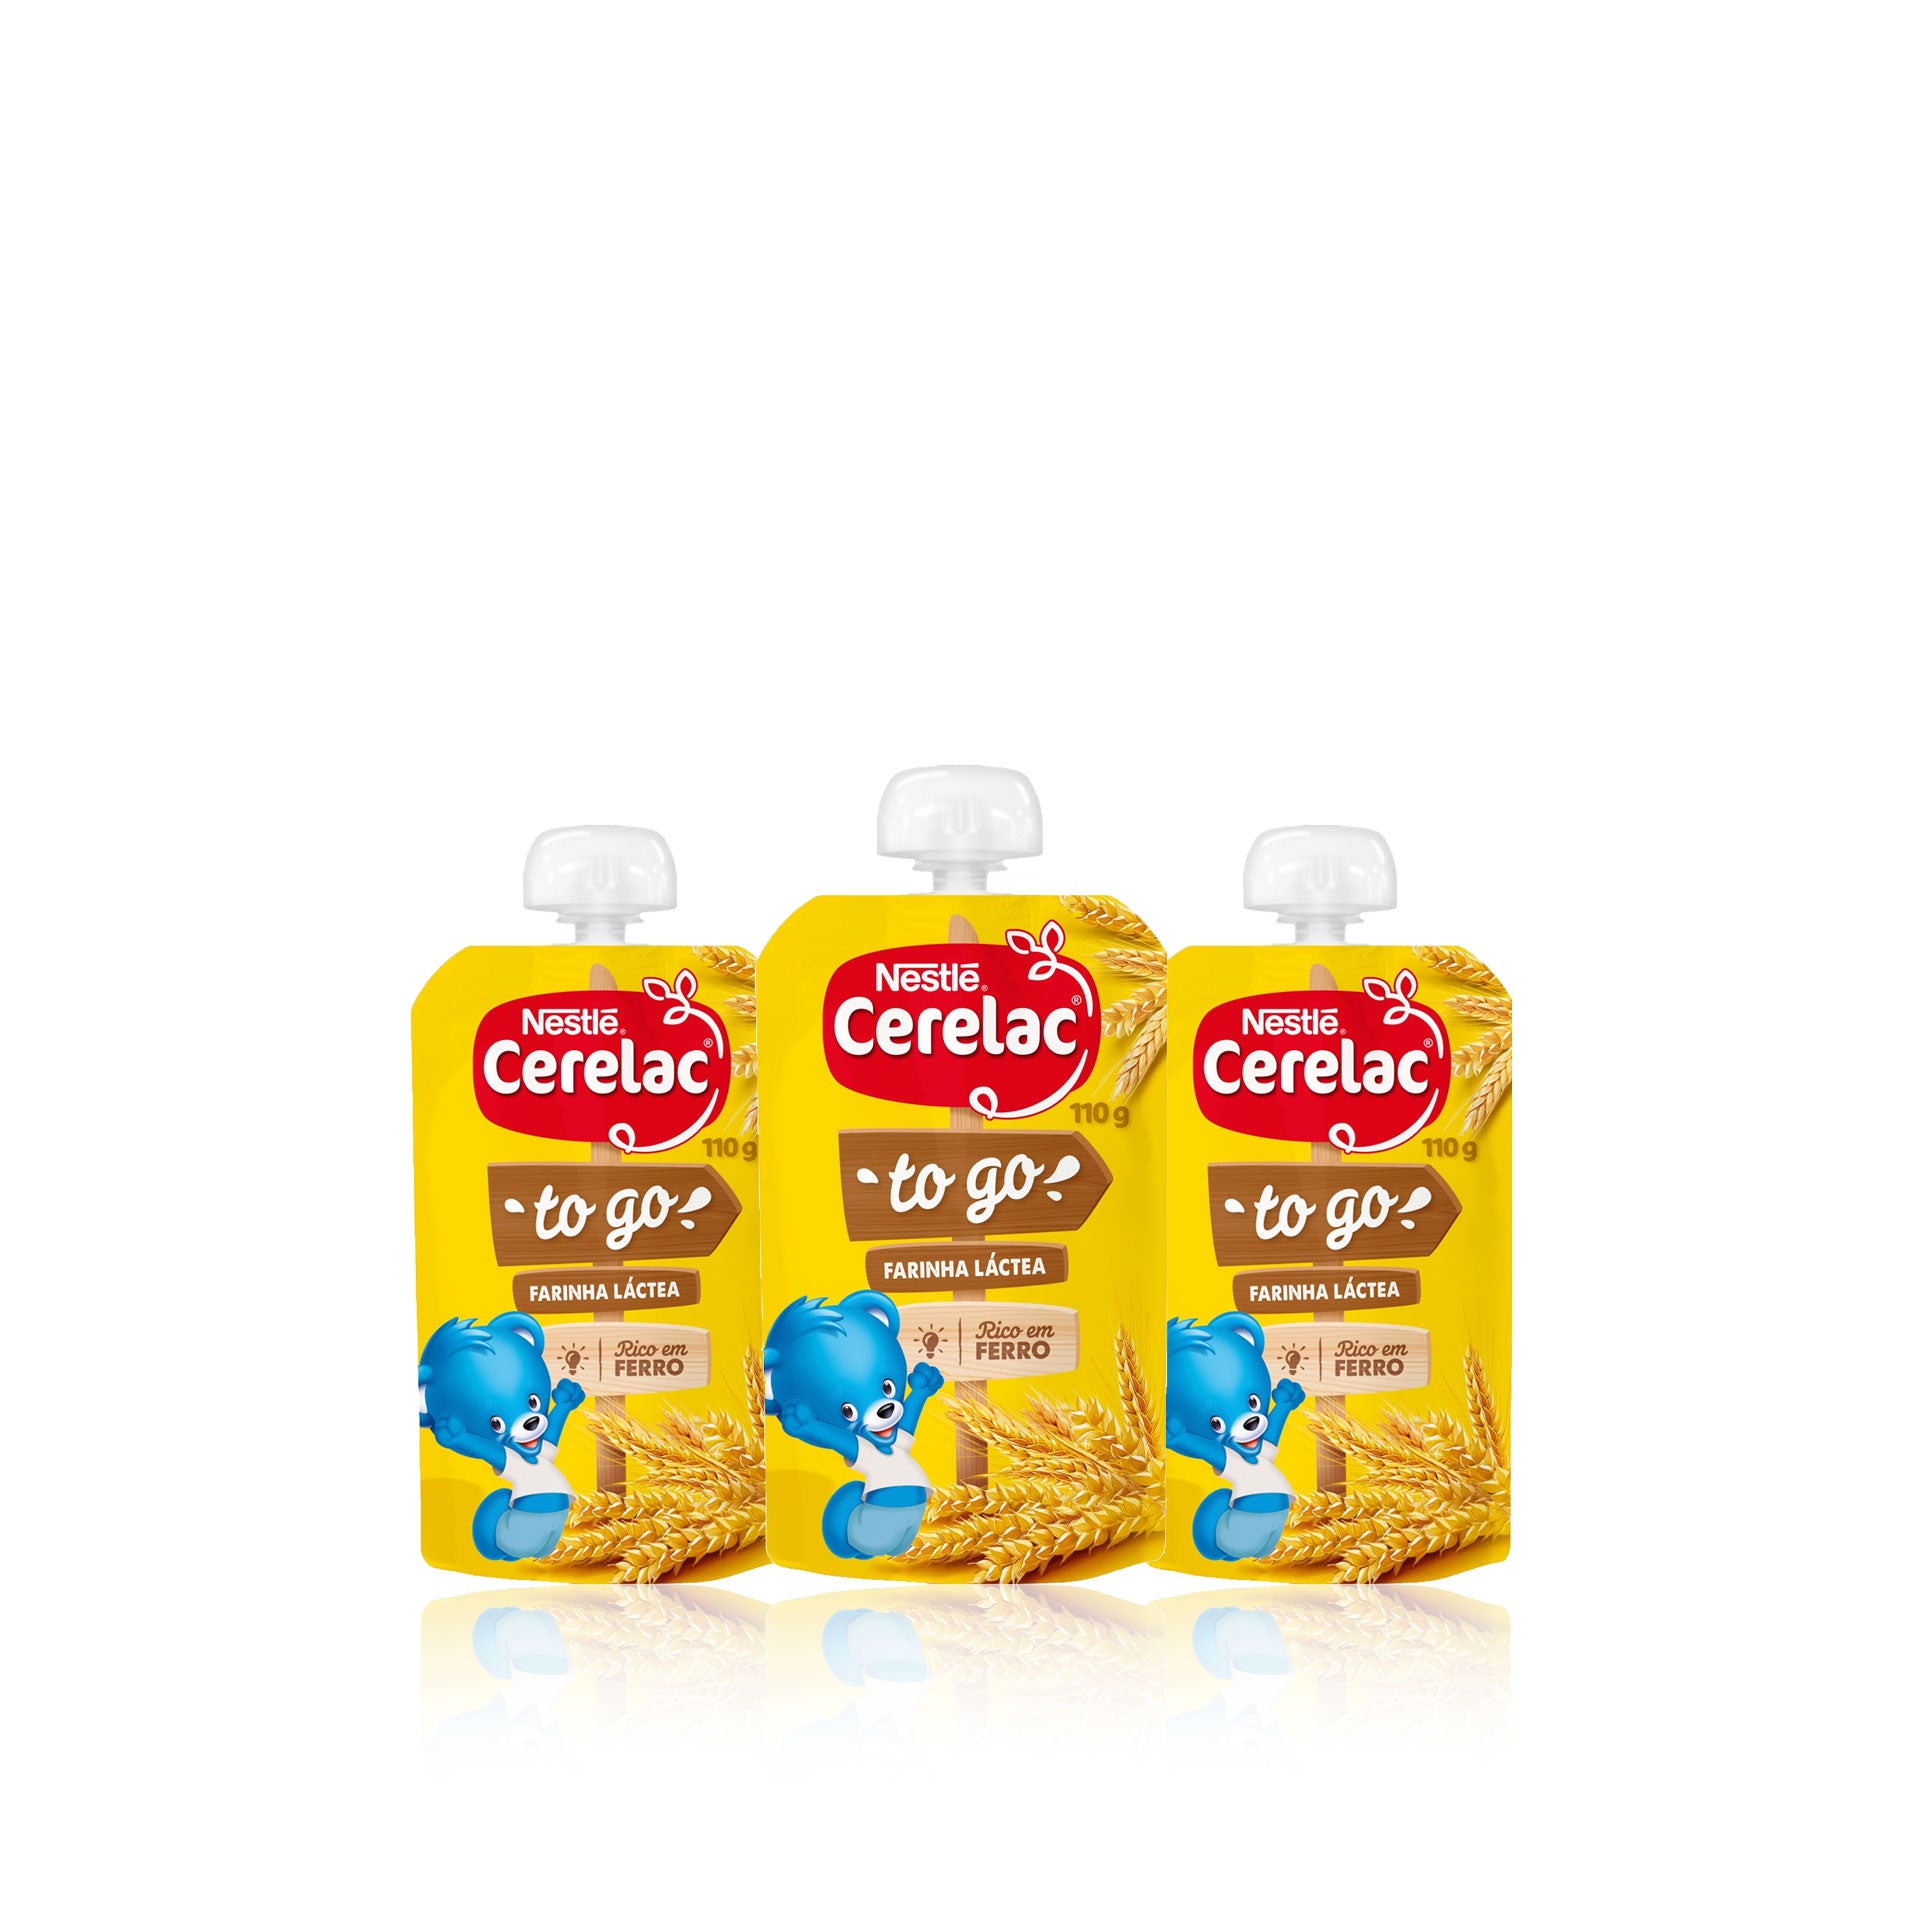 Nestlé Cerelac To Go Farinha Láctea 110 gr - Pack 3 x 110 gr